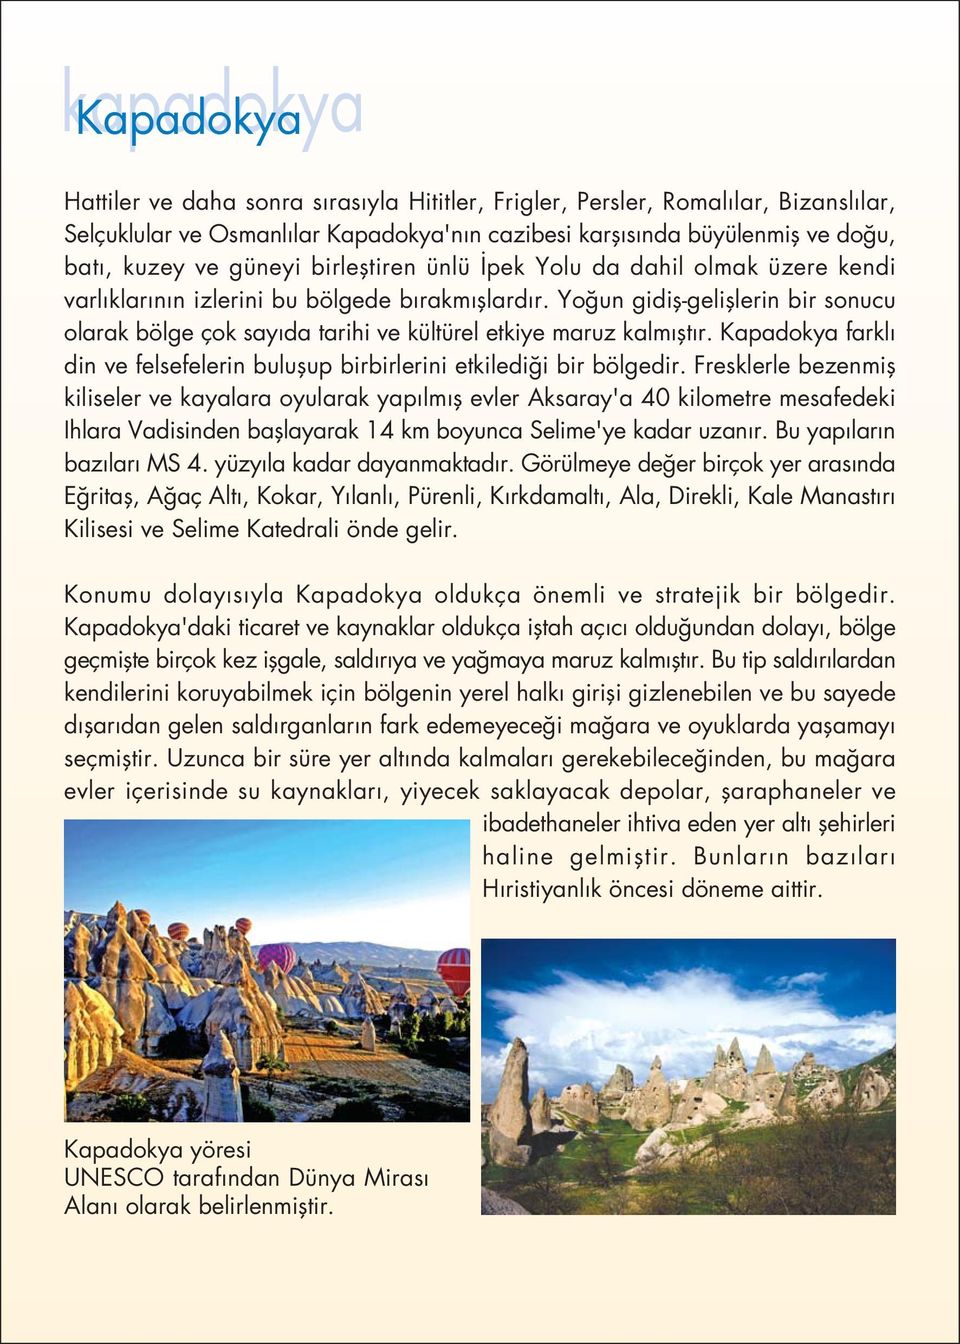 Yo un gidifl-gelifllerin bir sonucu olarak bölge çok say da tarihi ve kültürel etkiye maruz kalm flt r. Kapadokya farkl din ve felsefelerin buluflup birbirlerini etkiledi i bir bölgedir.